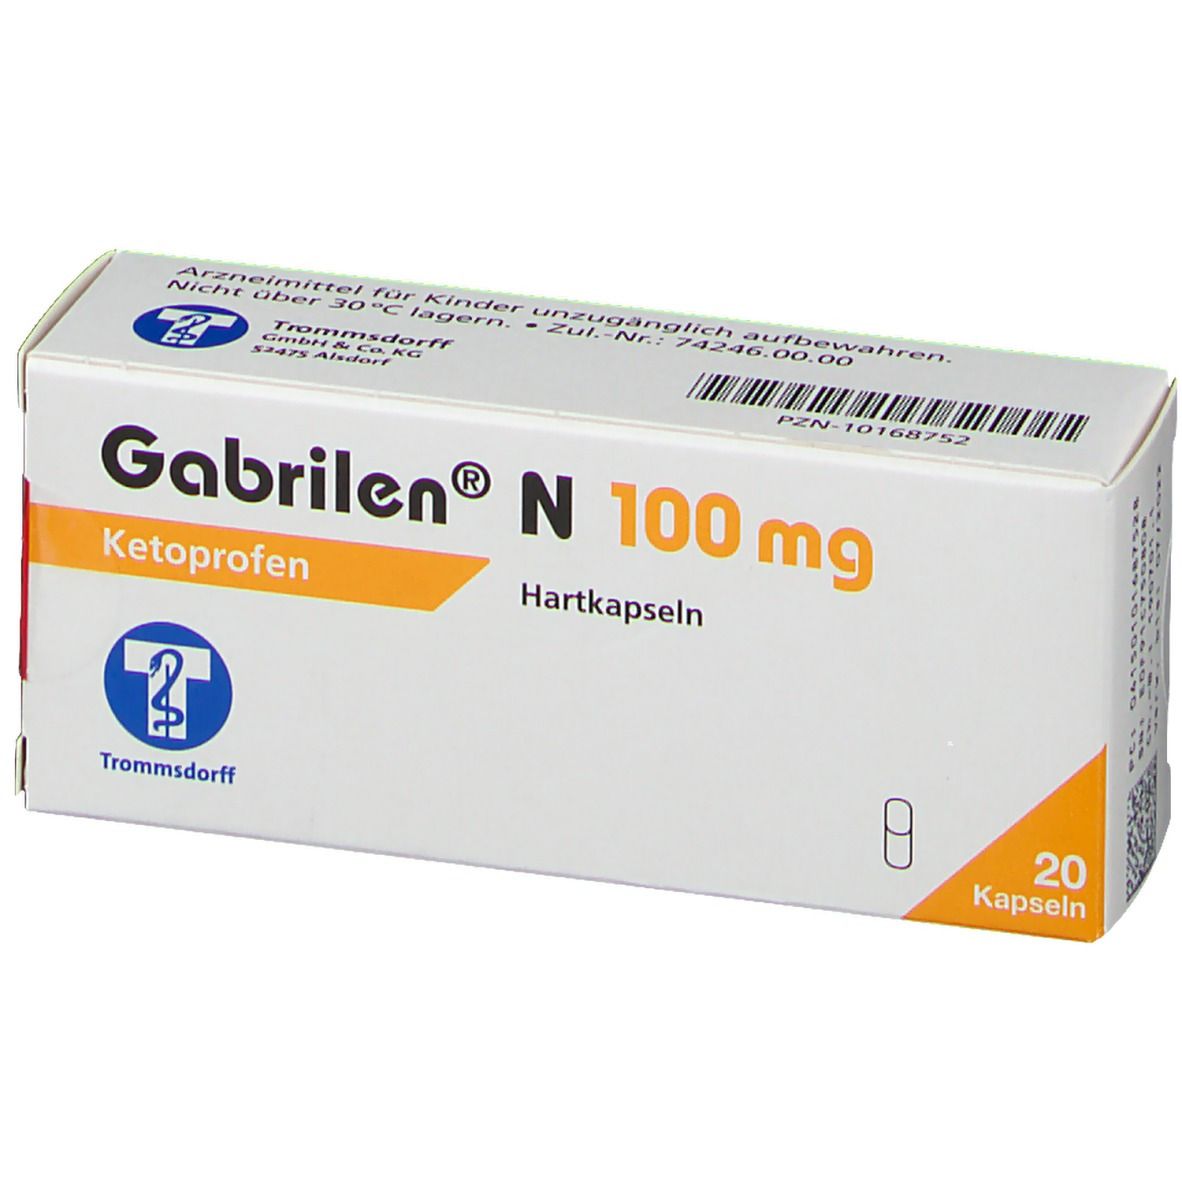 Gabrilen® N 100 mg